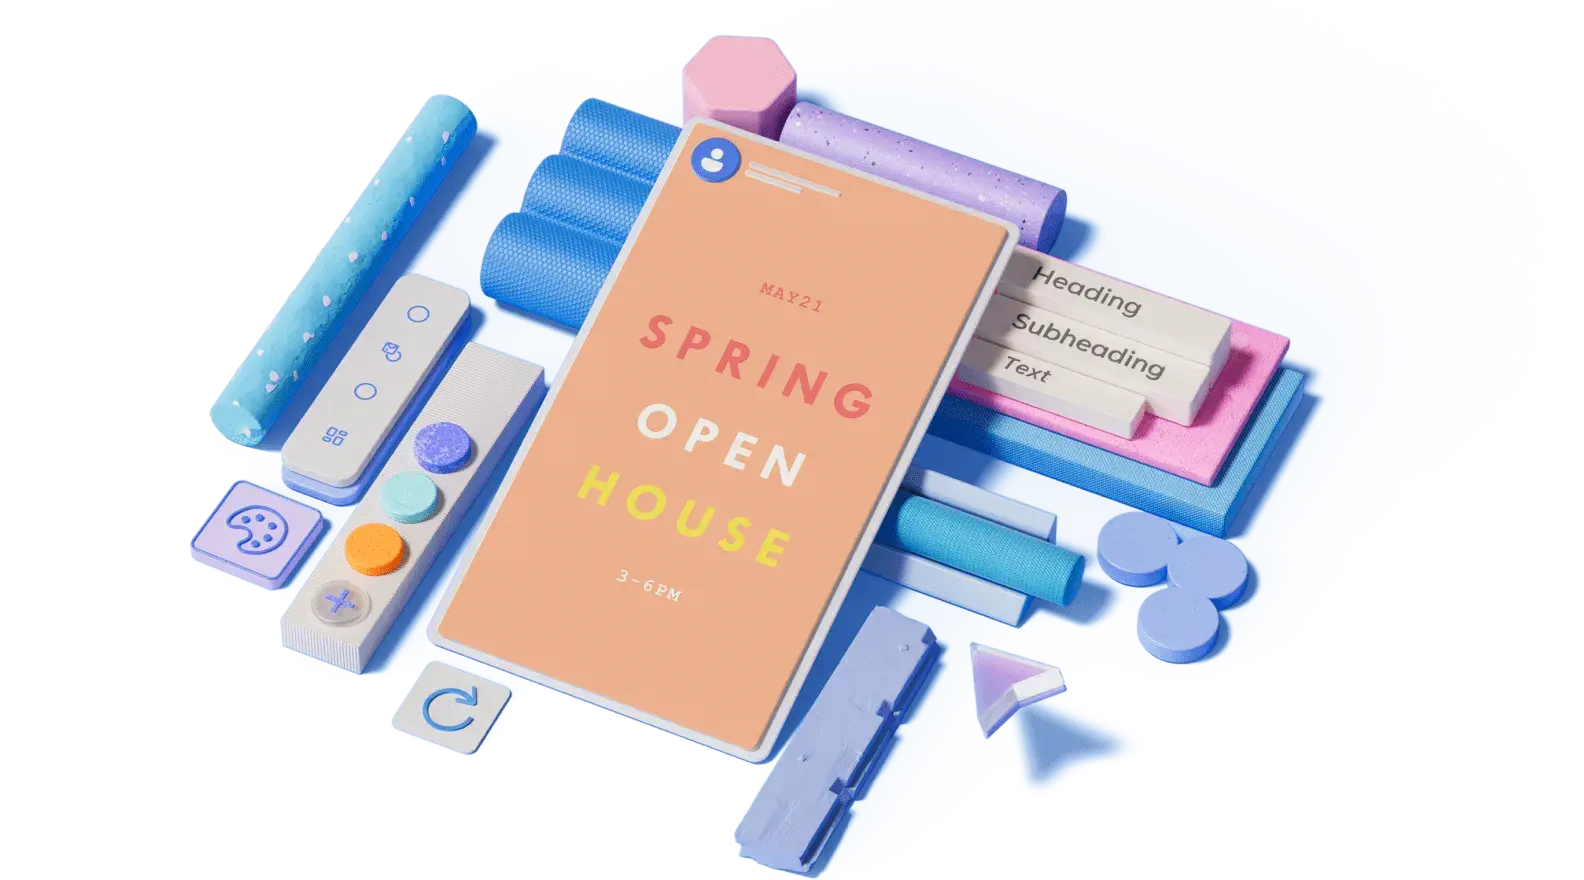 Vorlage für einen Tag der offenen Tür im Frühling, umgeben von illustrierten 3D-Designelementen